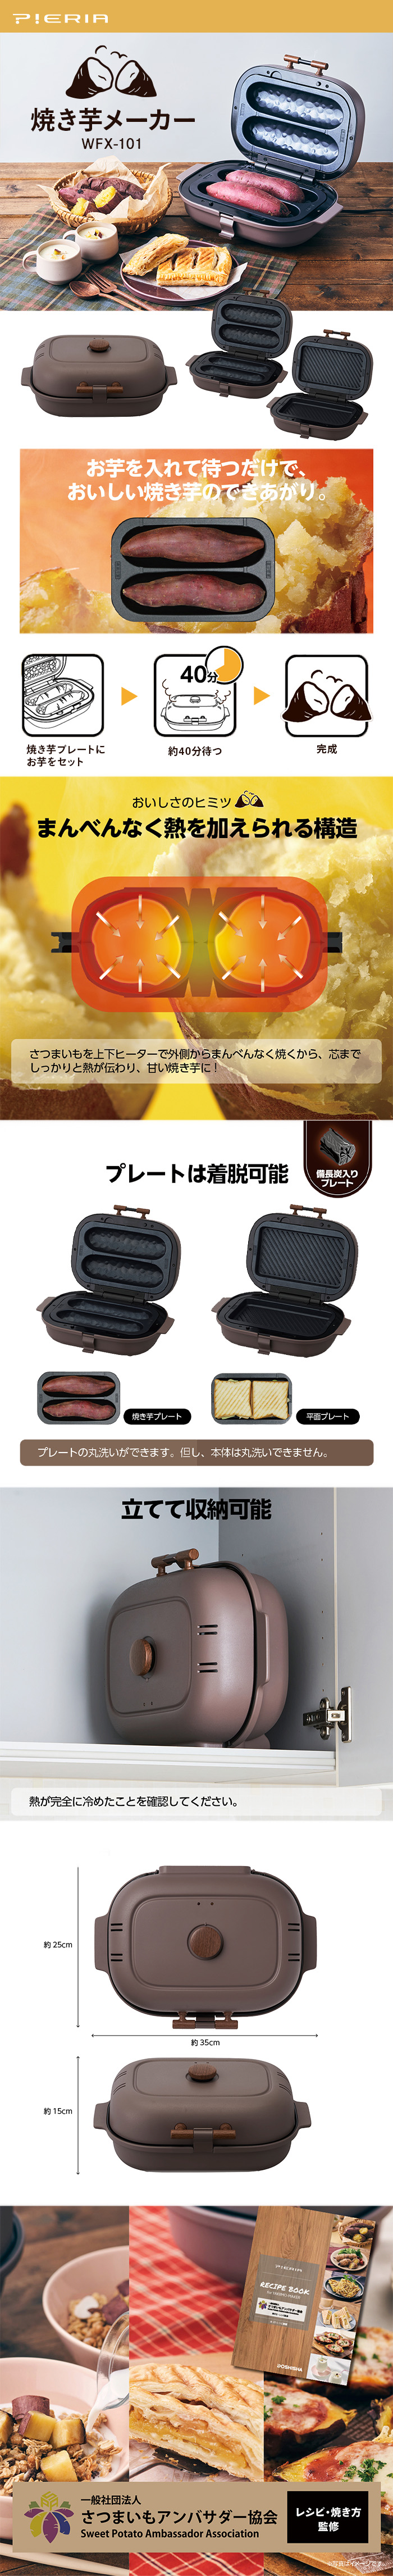 焼き芋メーカー WFX-101